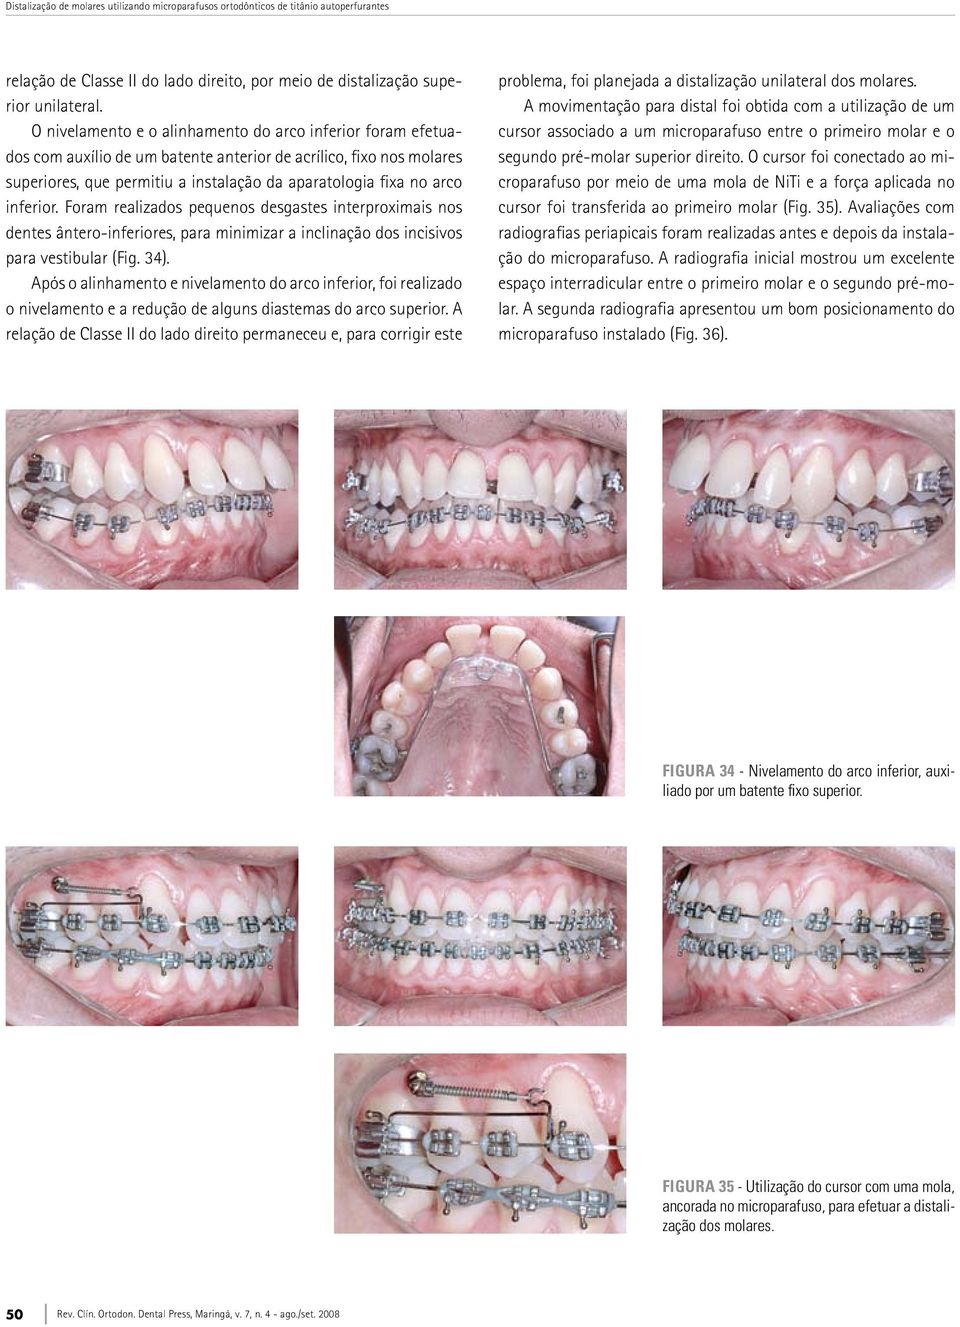 inferior. Foram realizados pequenos desgastes interproximais nos dentes ântero-inferiores, para minimizar a inclinação dos incisivos para vestibular (Fig. 34).